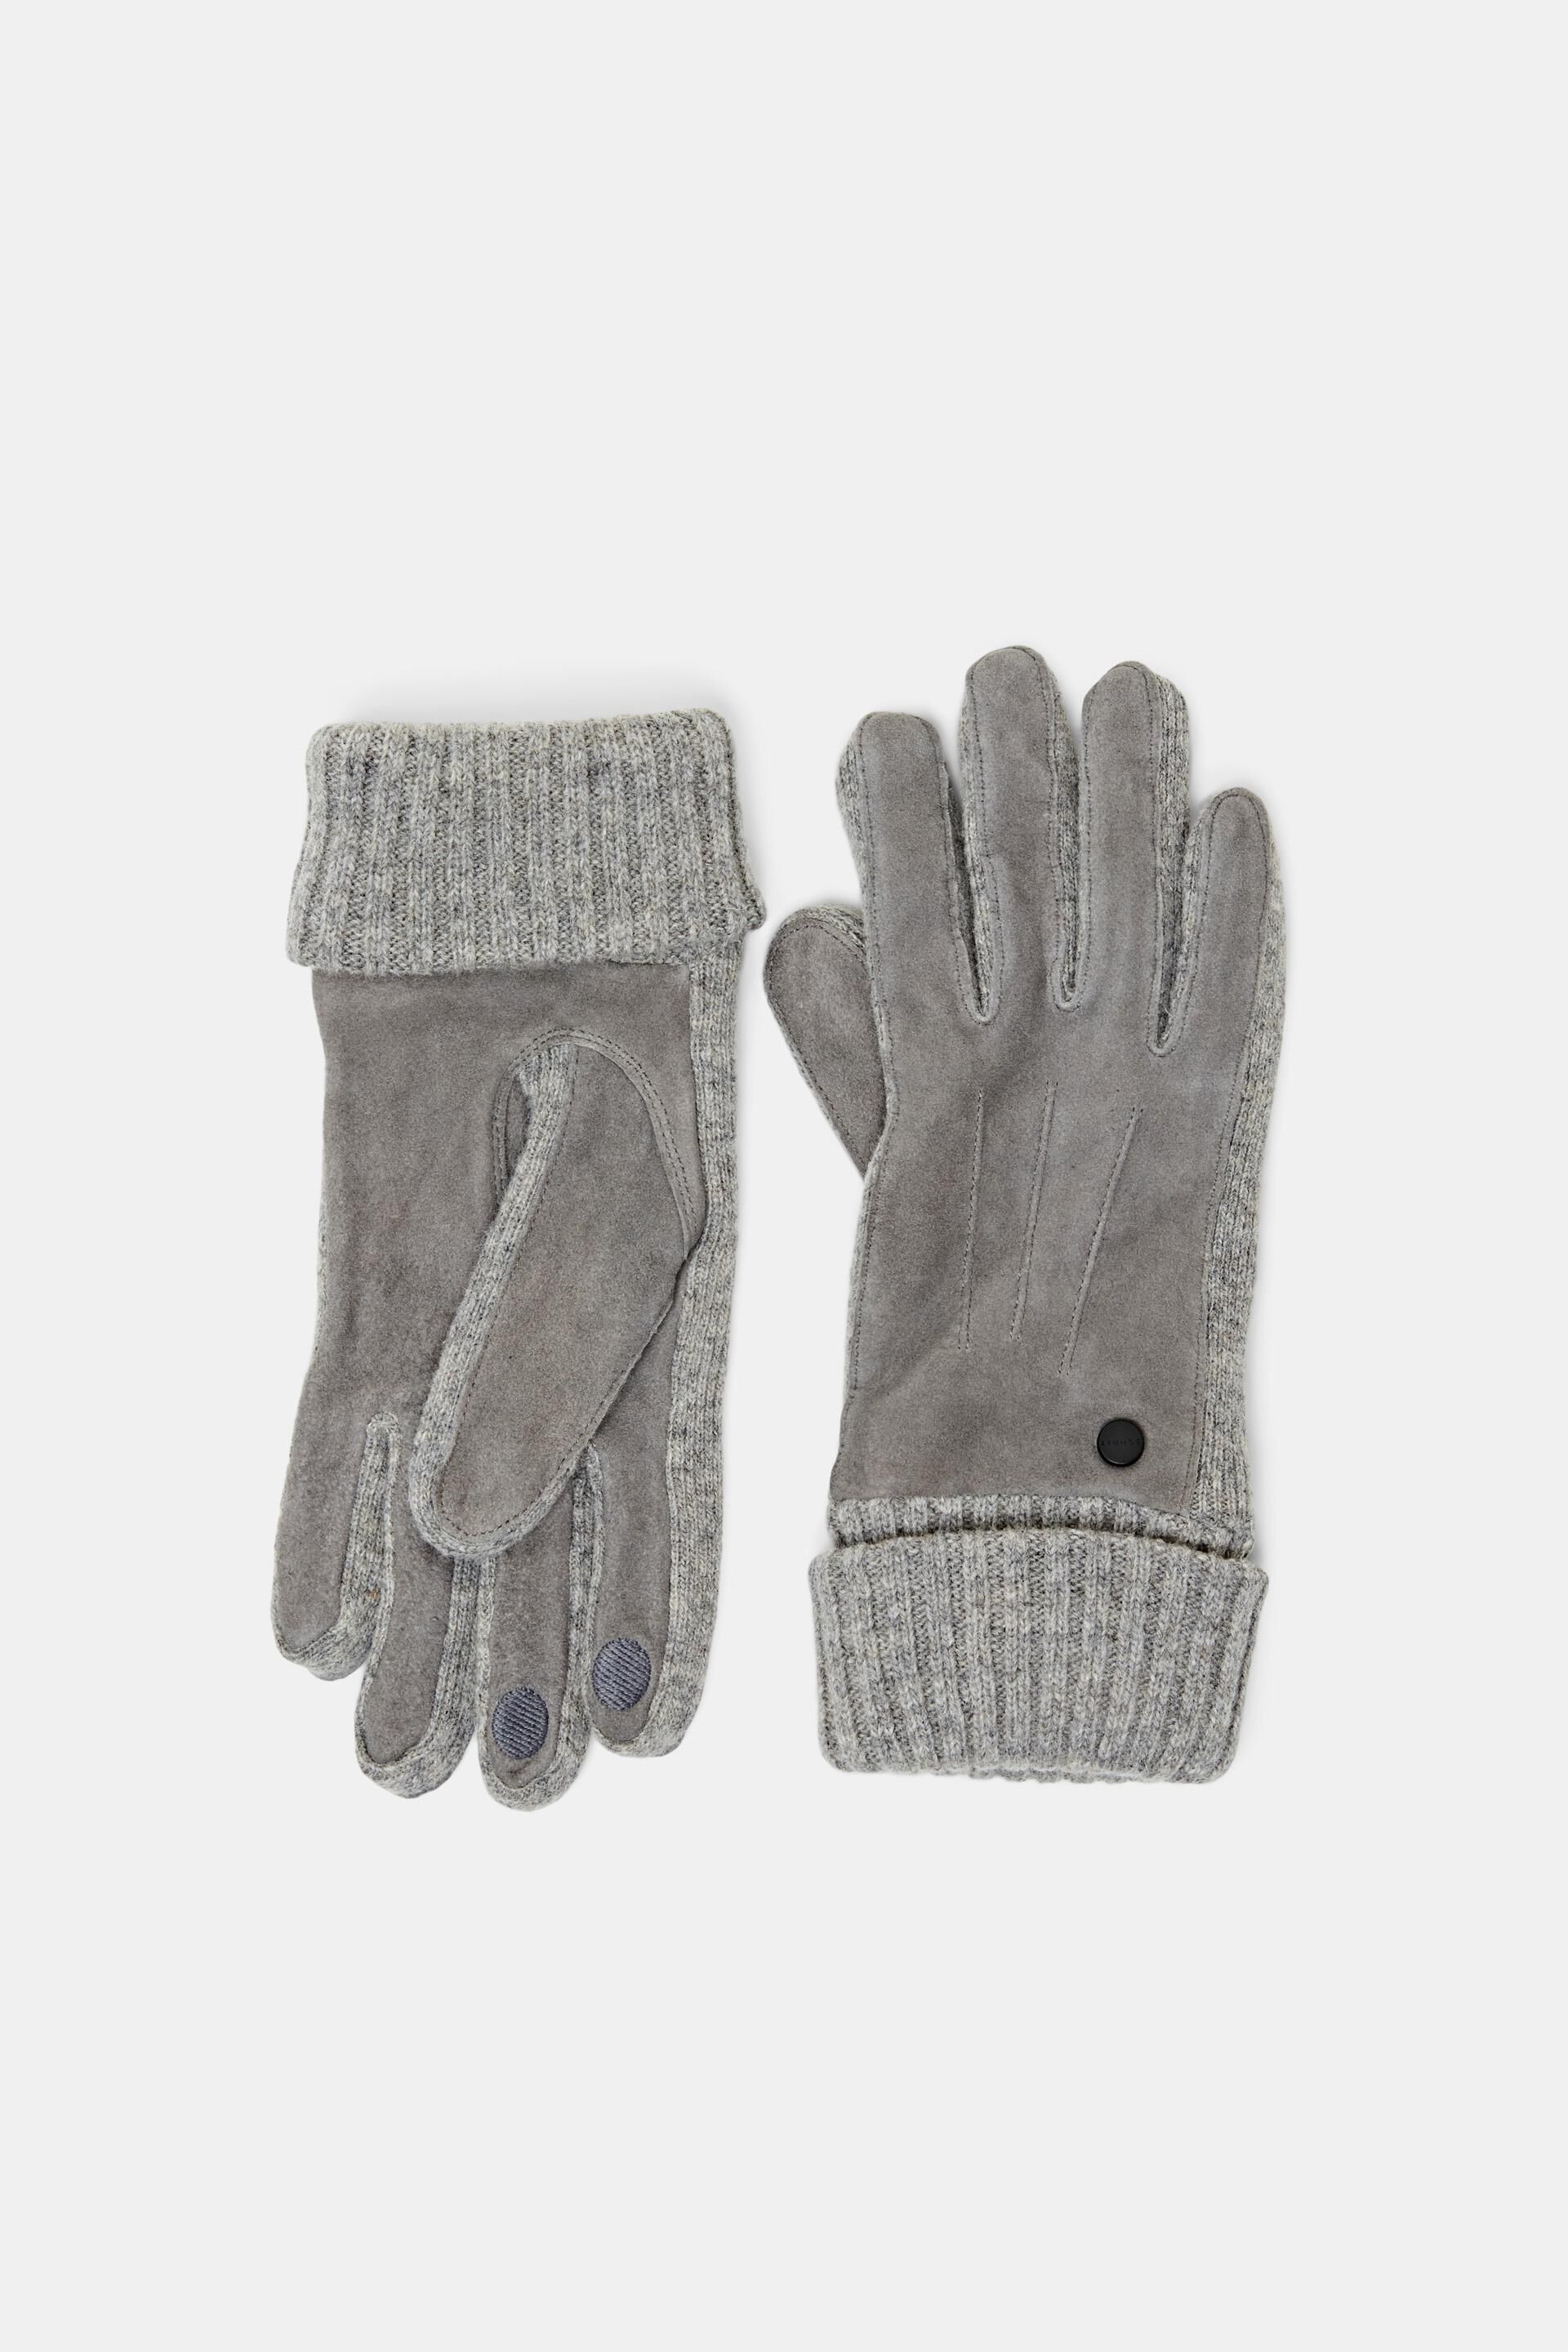 Graue Handschuhe Damen Accessoires Handschuhe Esprit Handschuhe 